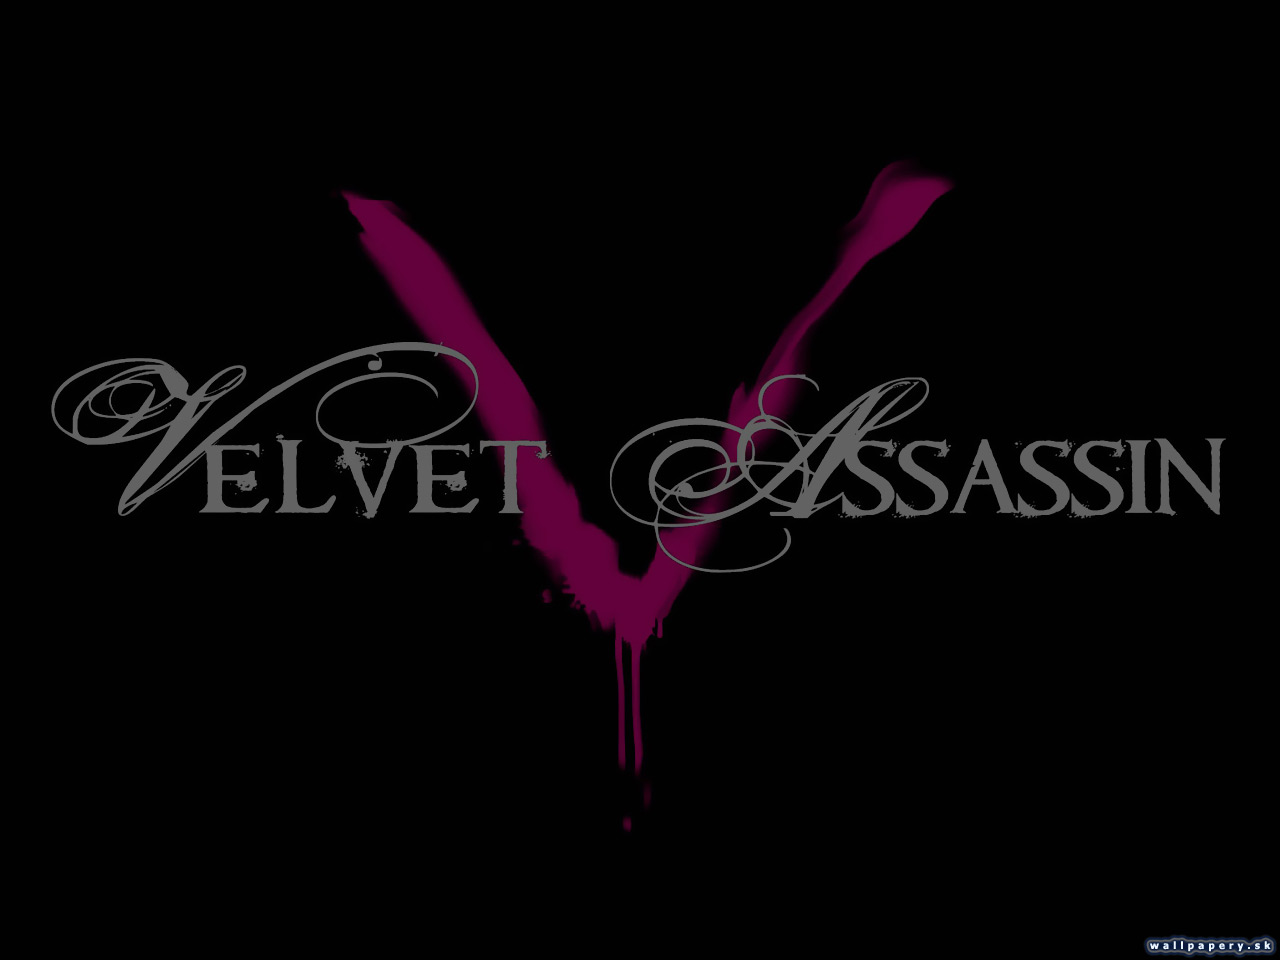 Velvet Assassin - wallpaper 8